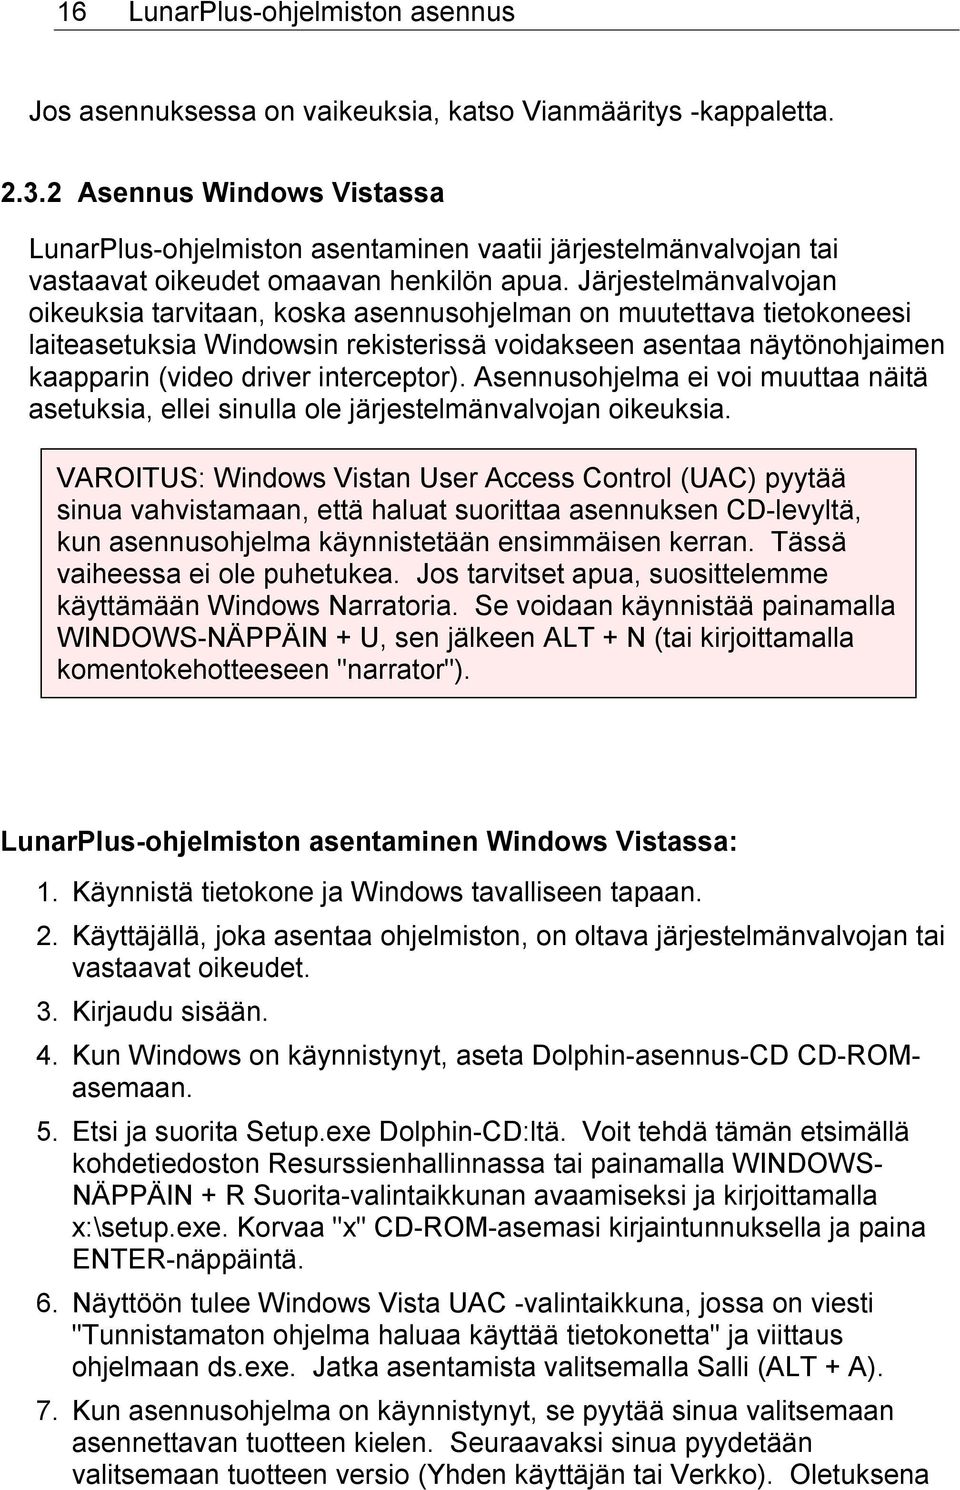 Järjestelmänvalvojan oikeuksia tarvitaan, koska asennusohjelman on muutettava tietokoneesi laiteasetuksia Windowsin rekisterissä voidakseen asentaa näytönohjaimen kaapparin (video driver interceptor).